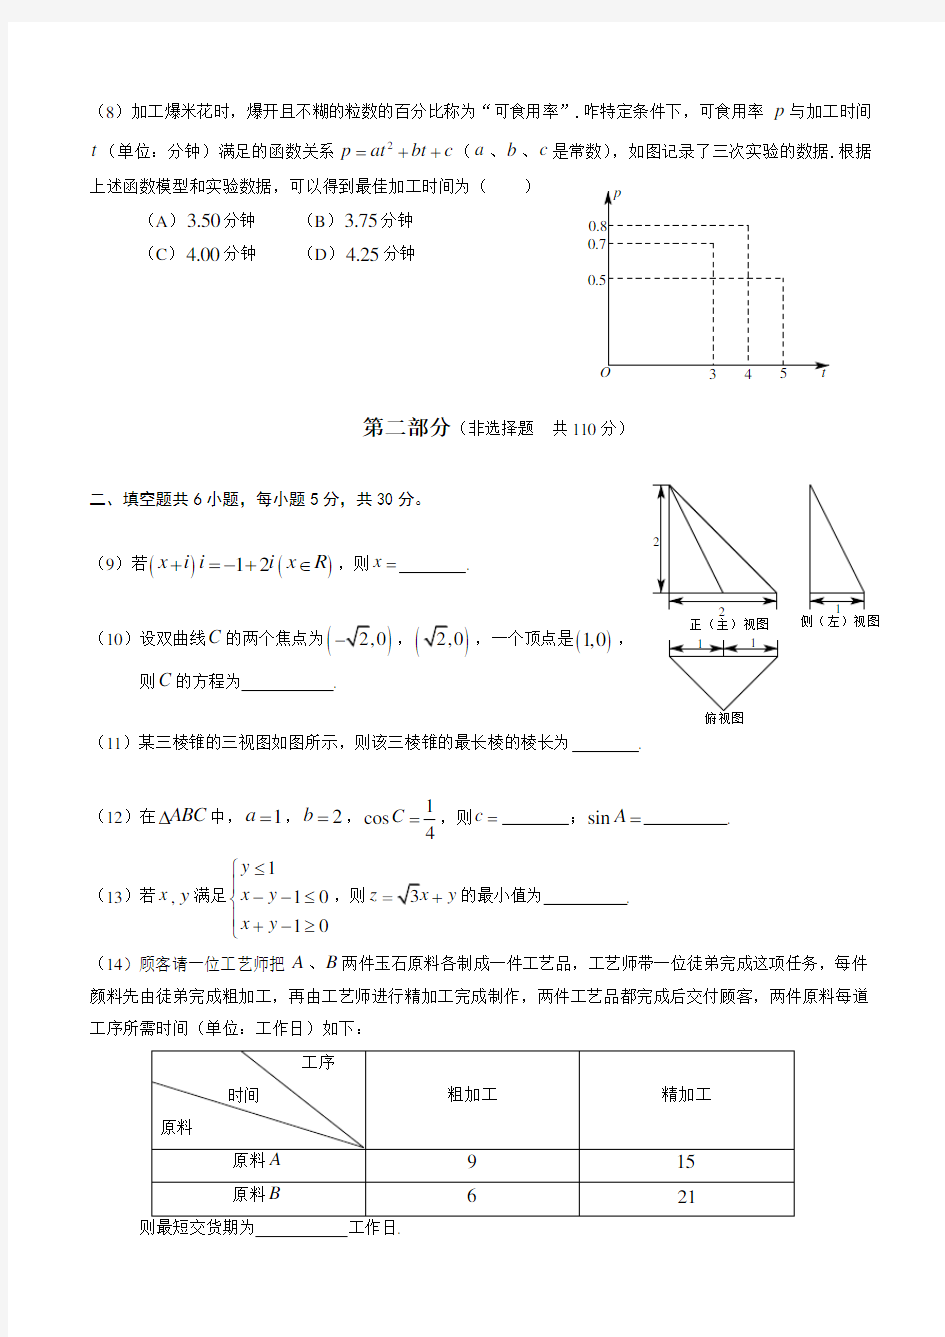 2014年北京高考数学文科试题及答案